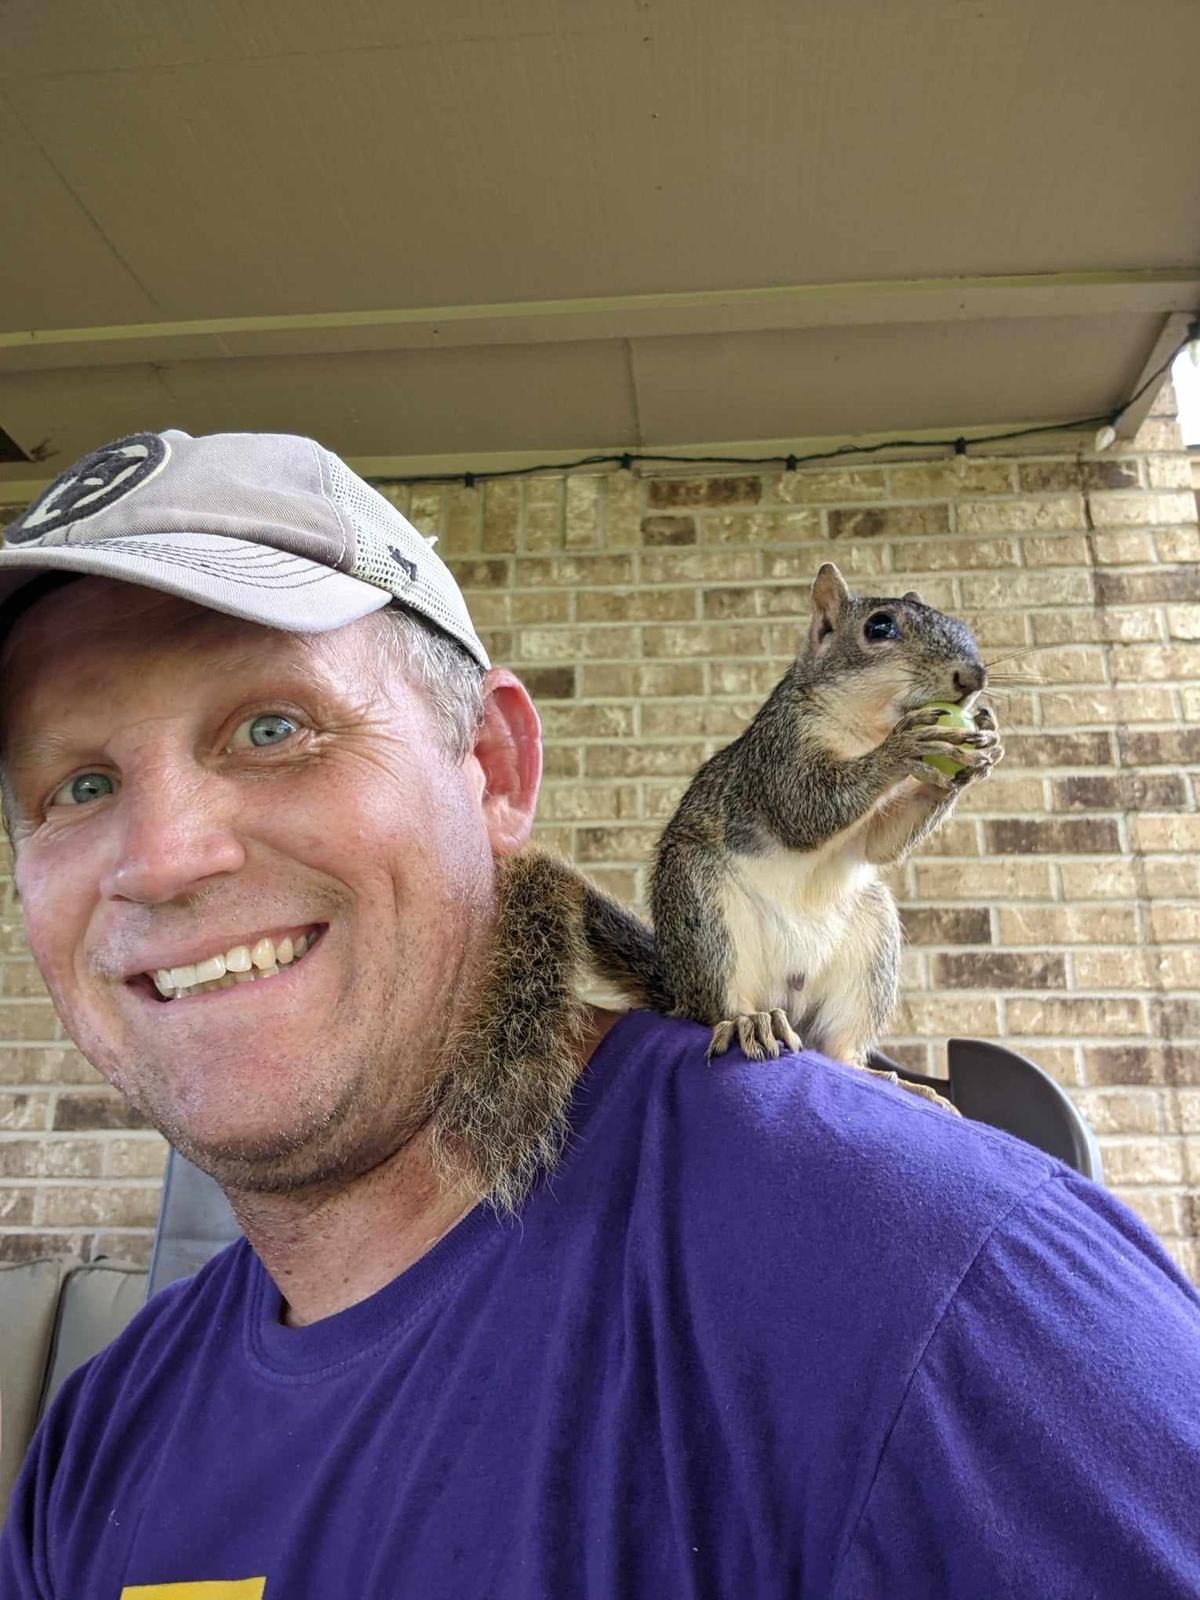 Keith Morgan and Dale the squirrel. (Courtesy of <a href="https://www.facebook.com/keith.morgan.98/">Keith Morgan</a>)